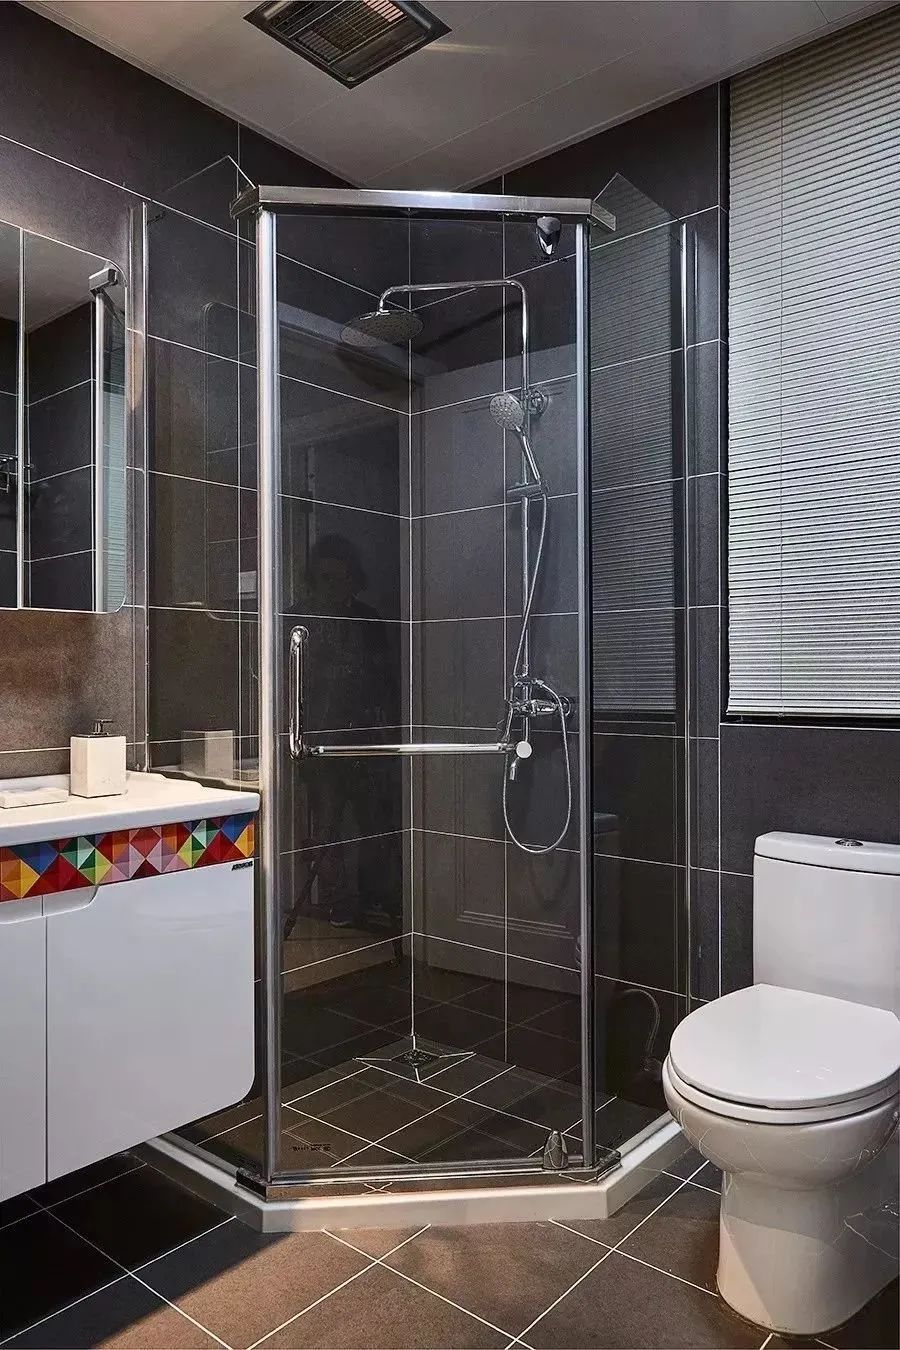 淋浴房品牌朗斯_德立和朗斯淋浴房比较_朗斯淋浴房和德立淋浴房哪个好